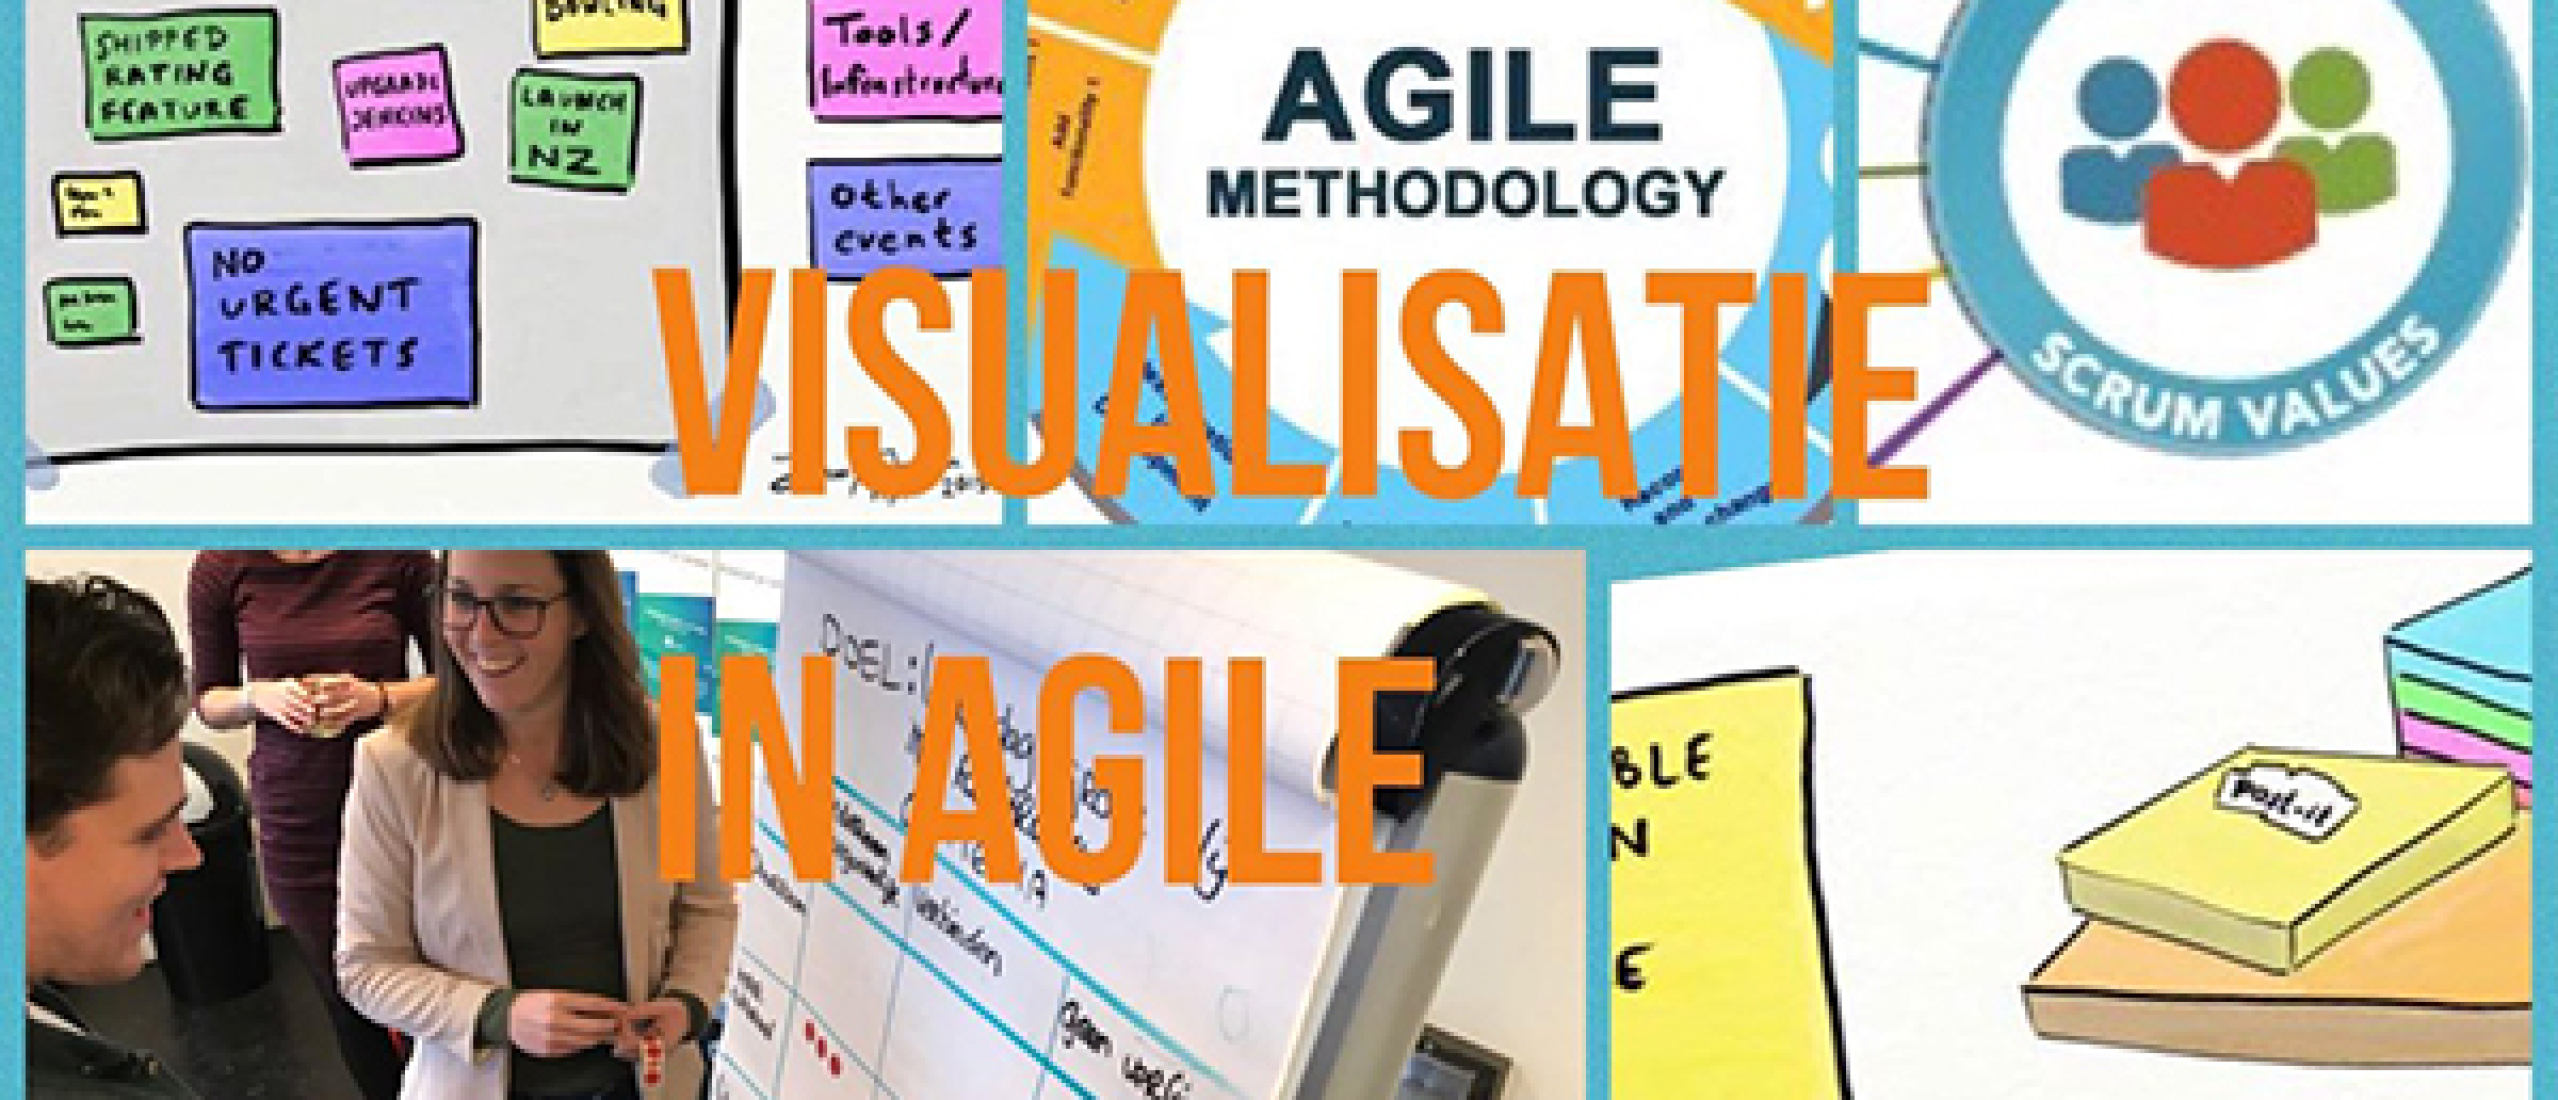 De kracht van visualisatie bij Agile